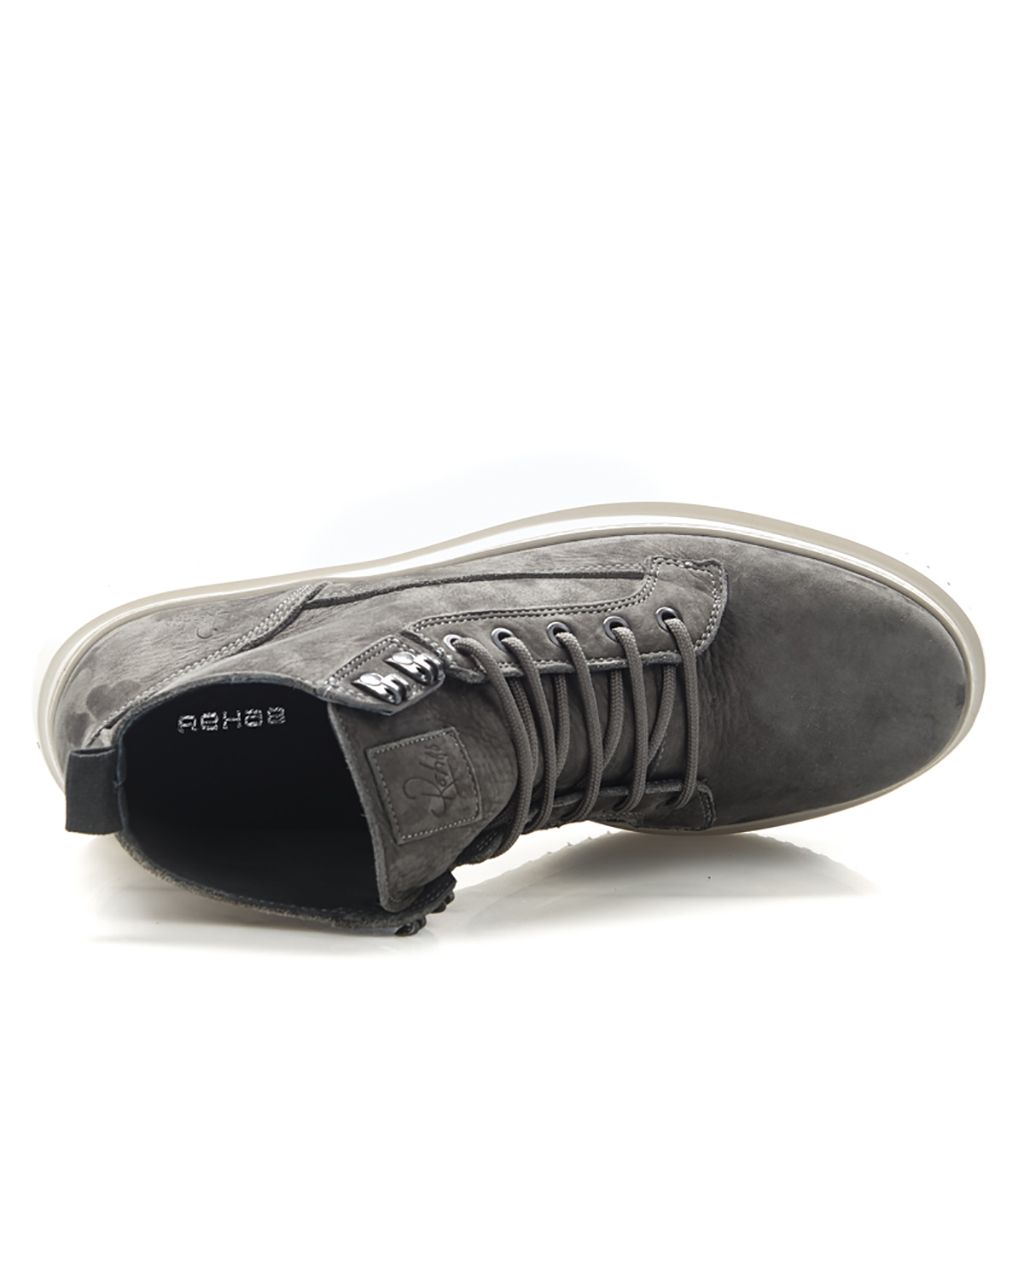 REHAB MORRIS Sneakers Donker grijs 071658-002-40